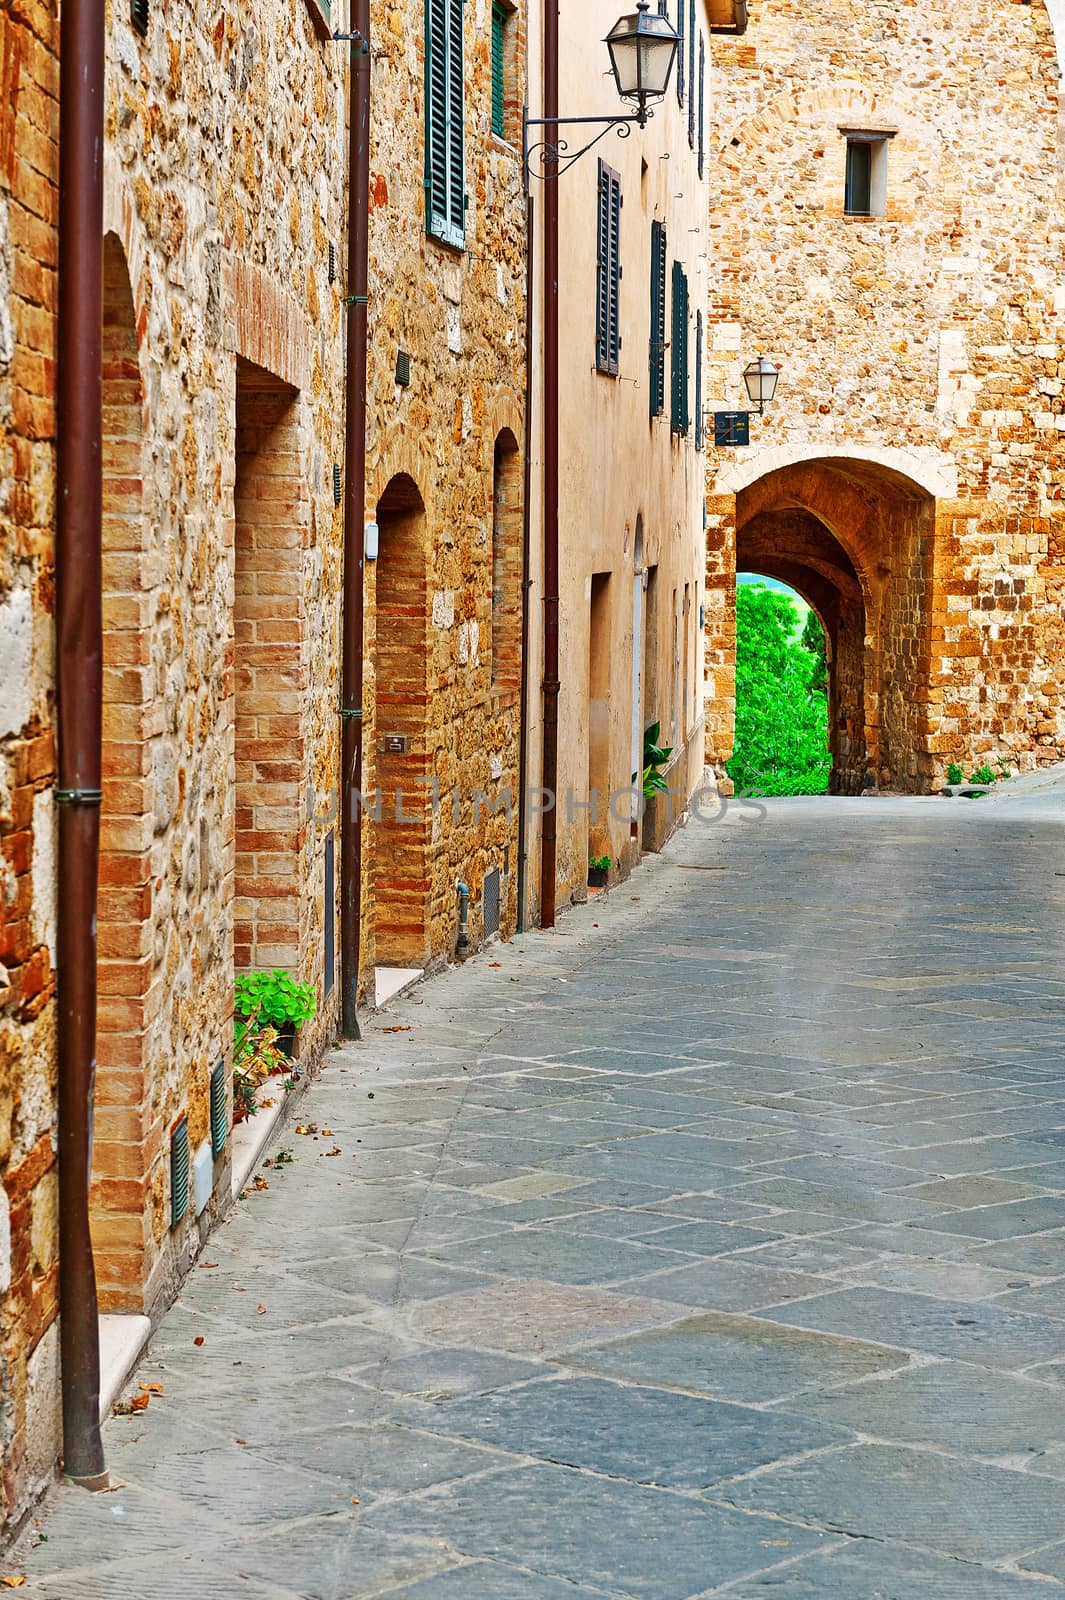 Narrow Alley in Italian City of Cetona